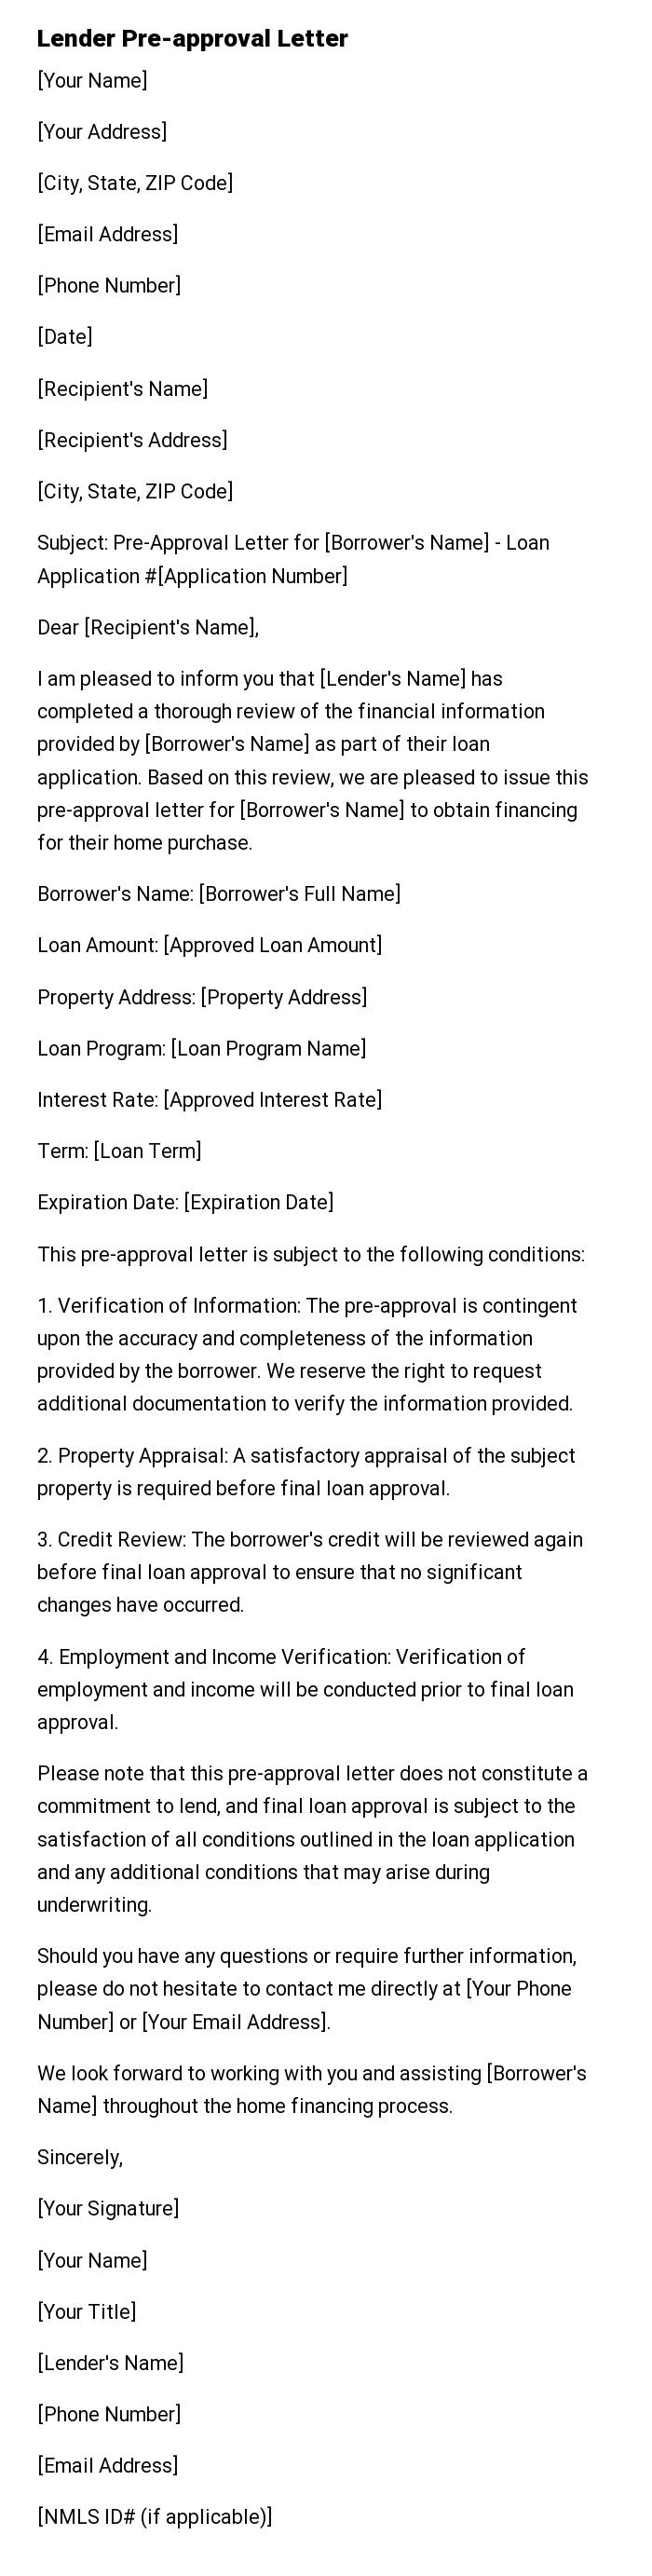 Lender Pre-approval Letter